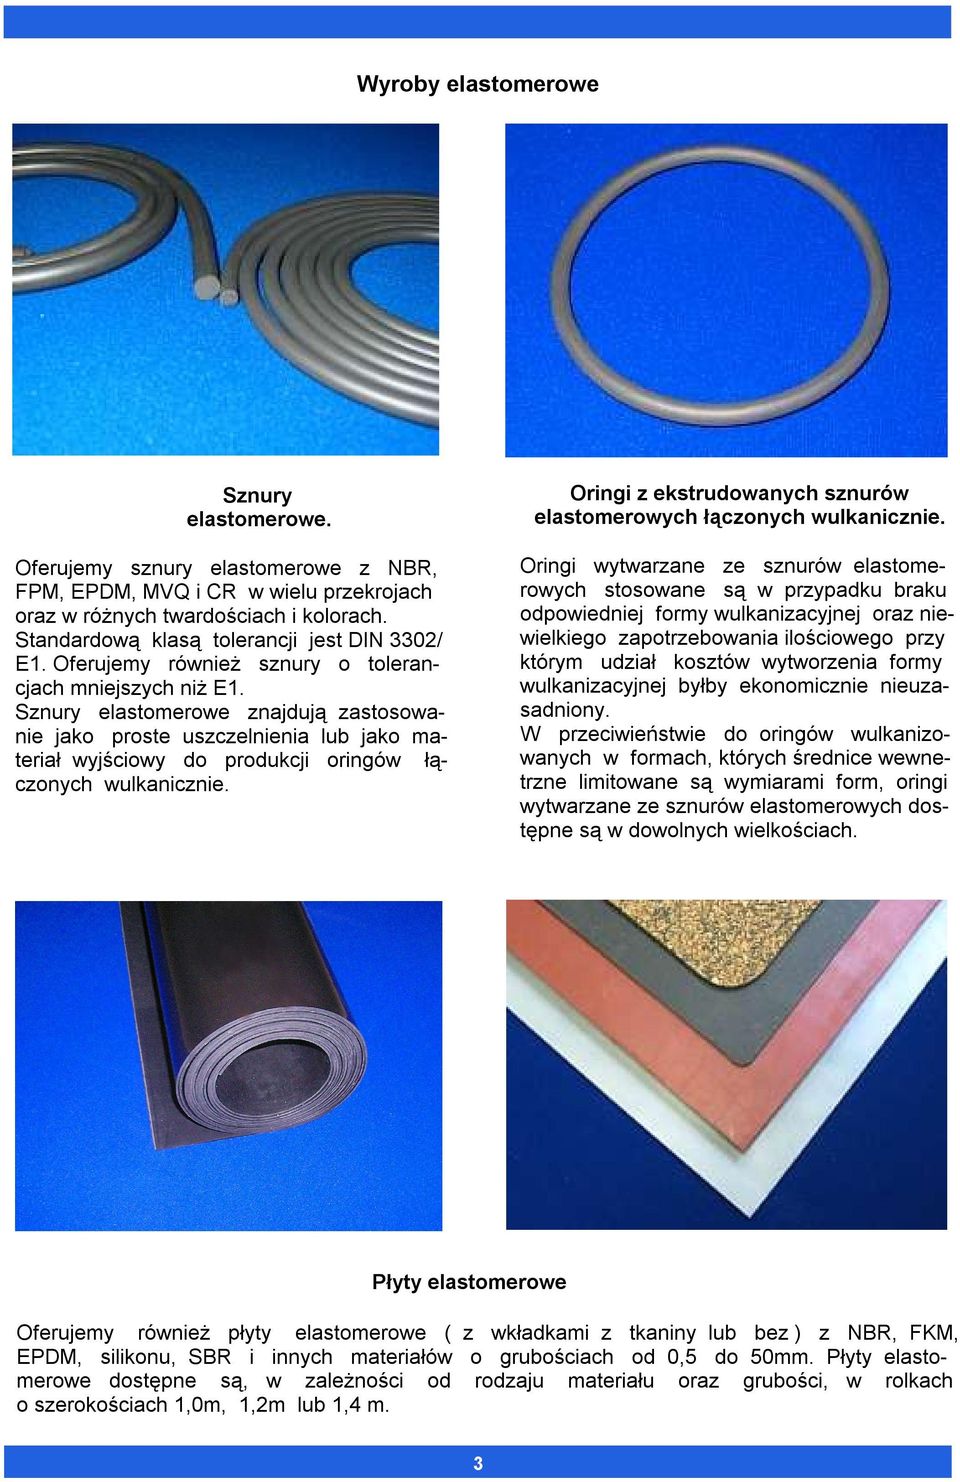 Sznury elastomerowe znajdują zastosowanie jako proste uszczelnienia lub jako materiał wyjściowy do produkcji oringów łączonych wulkanicznie.